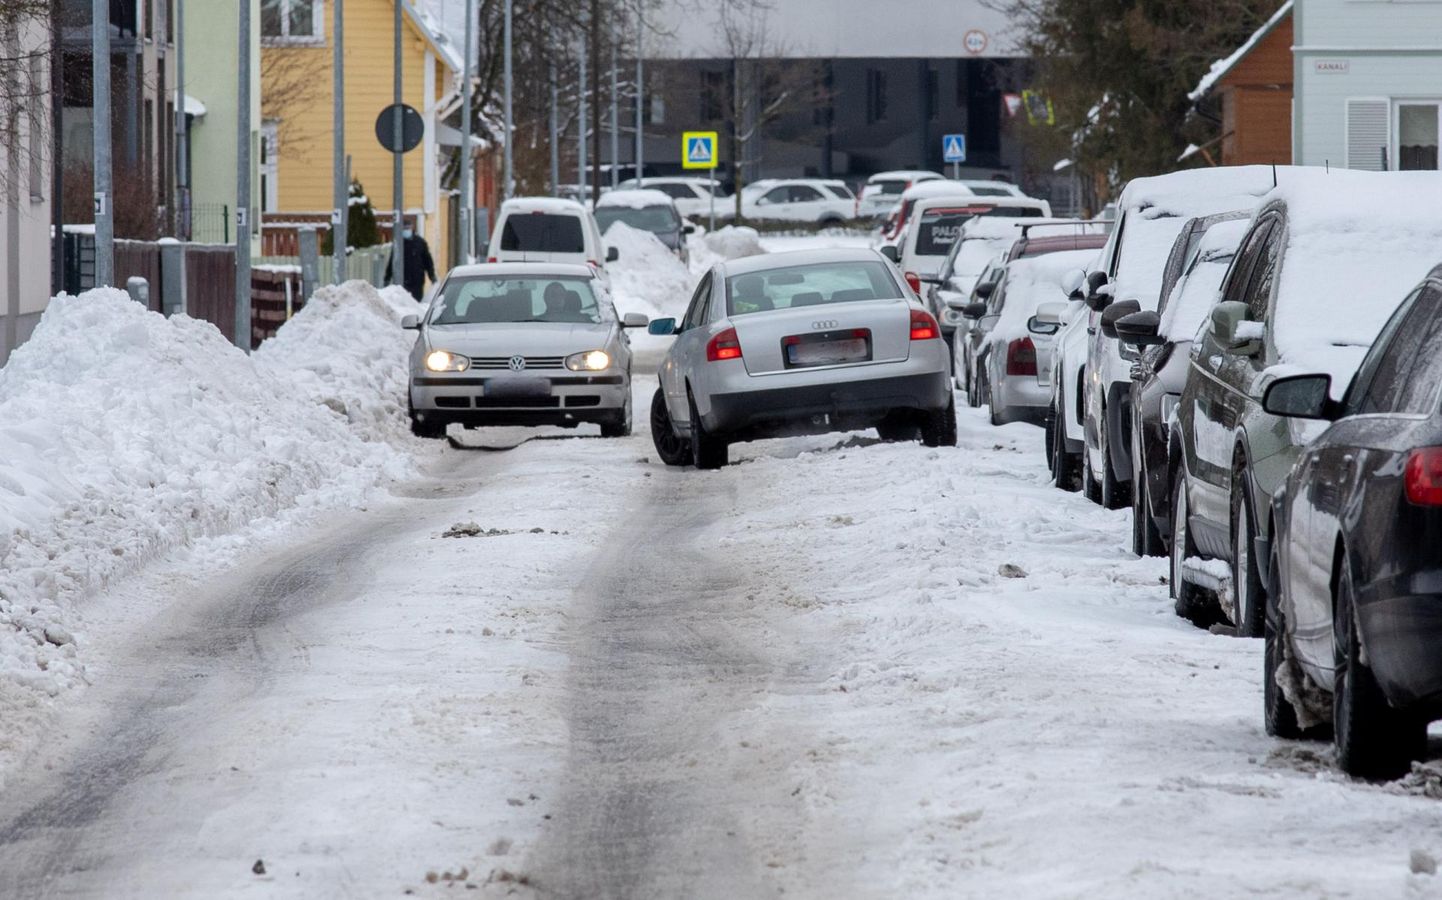 Kitsastel kõrvaltänavatel on liiklus lumevallide ja aukude tõttu raskendatud.